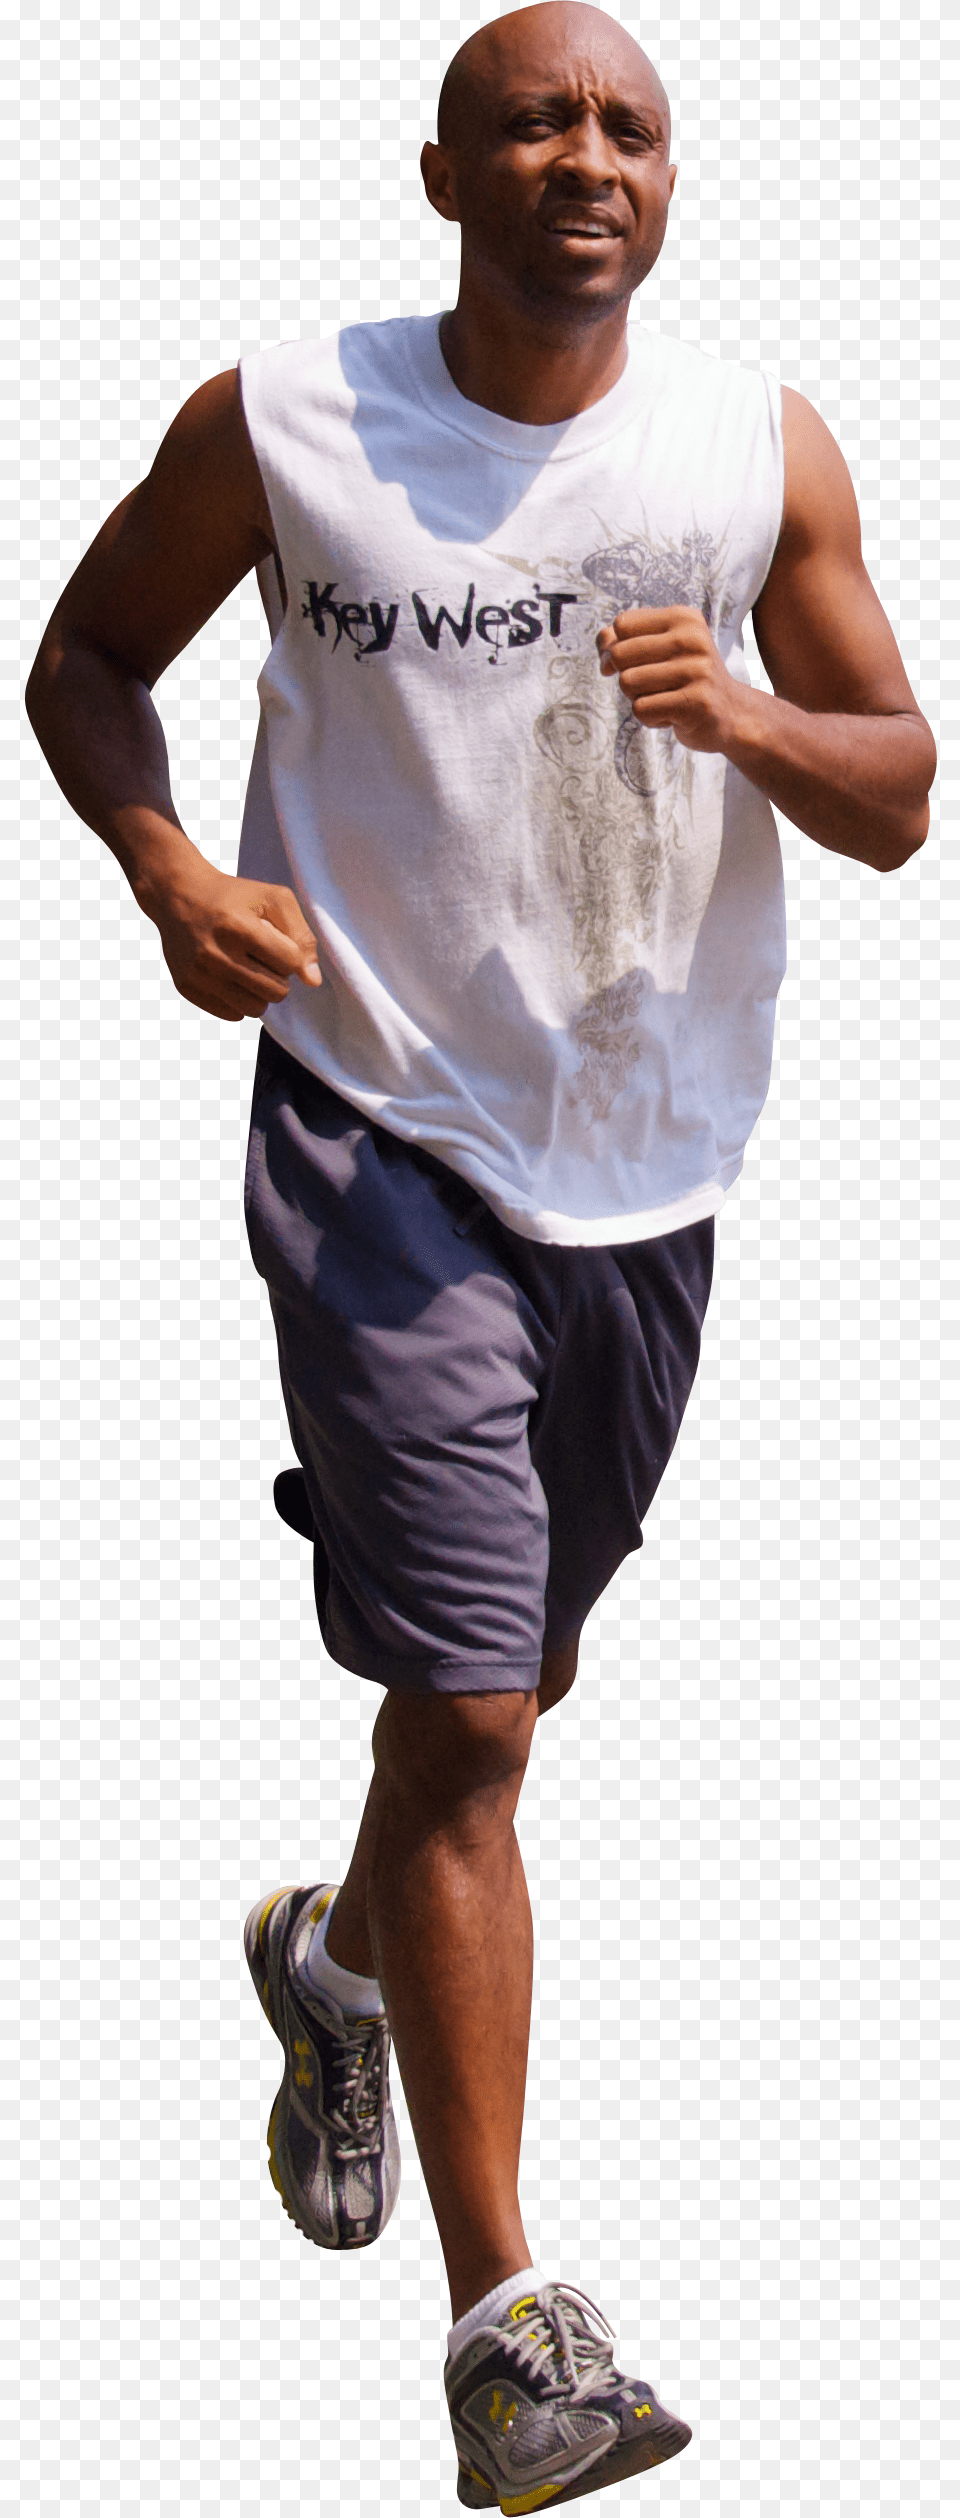 Jogging Free Black Man Jogging, T-shirt, Clothing, Sneaker, Footwear Png Image